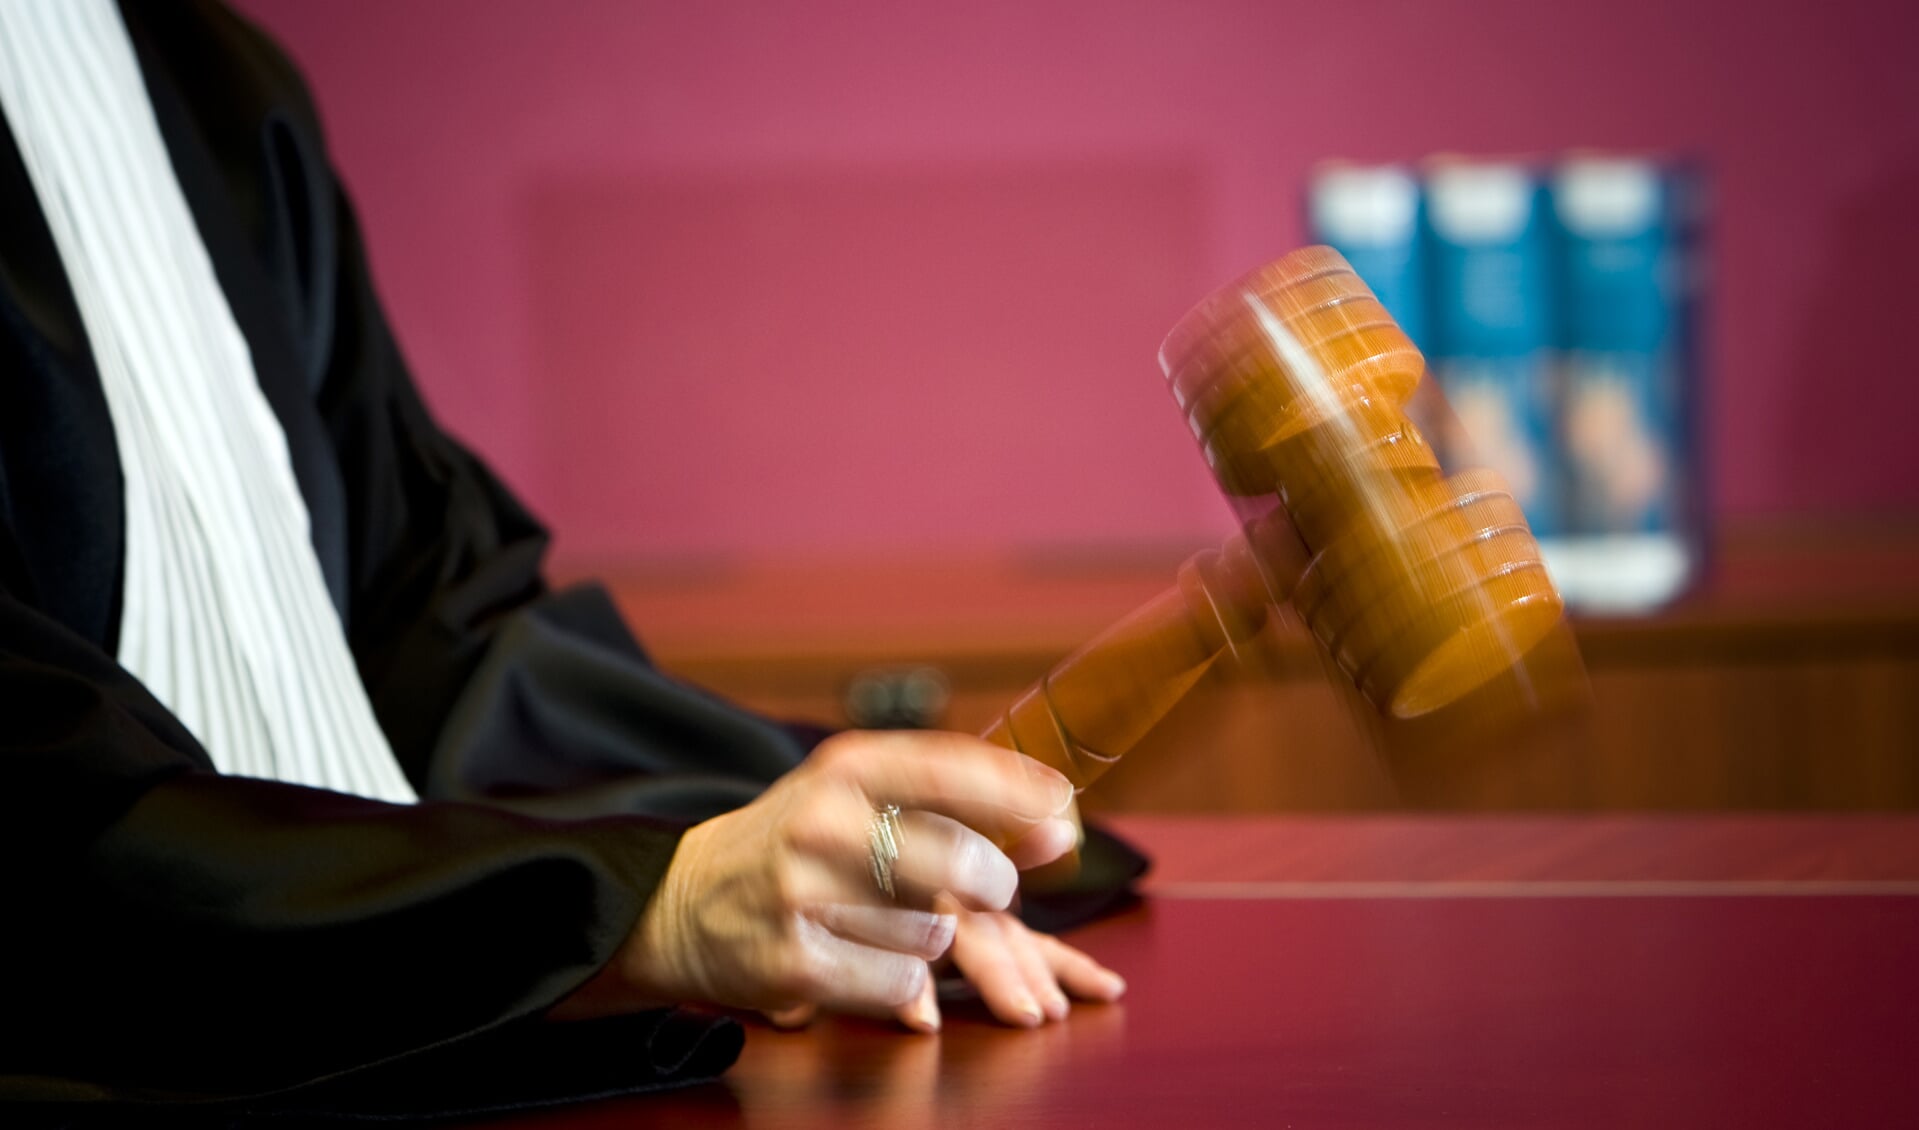 Het gerechtshof in ’s-Hertogenbosch veroordeelde de Geffenaar tot een celstraf.